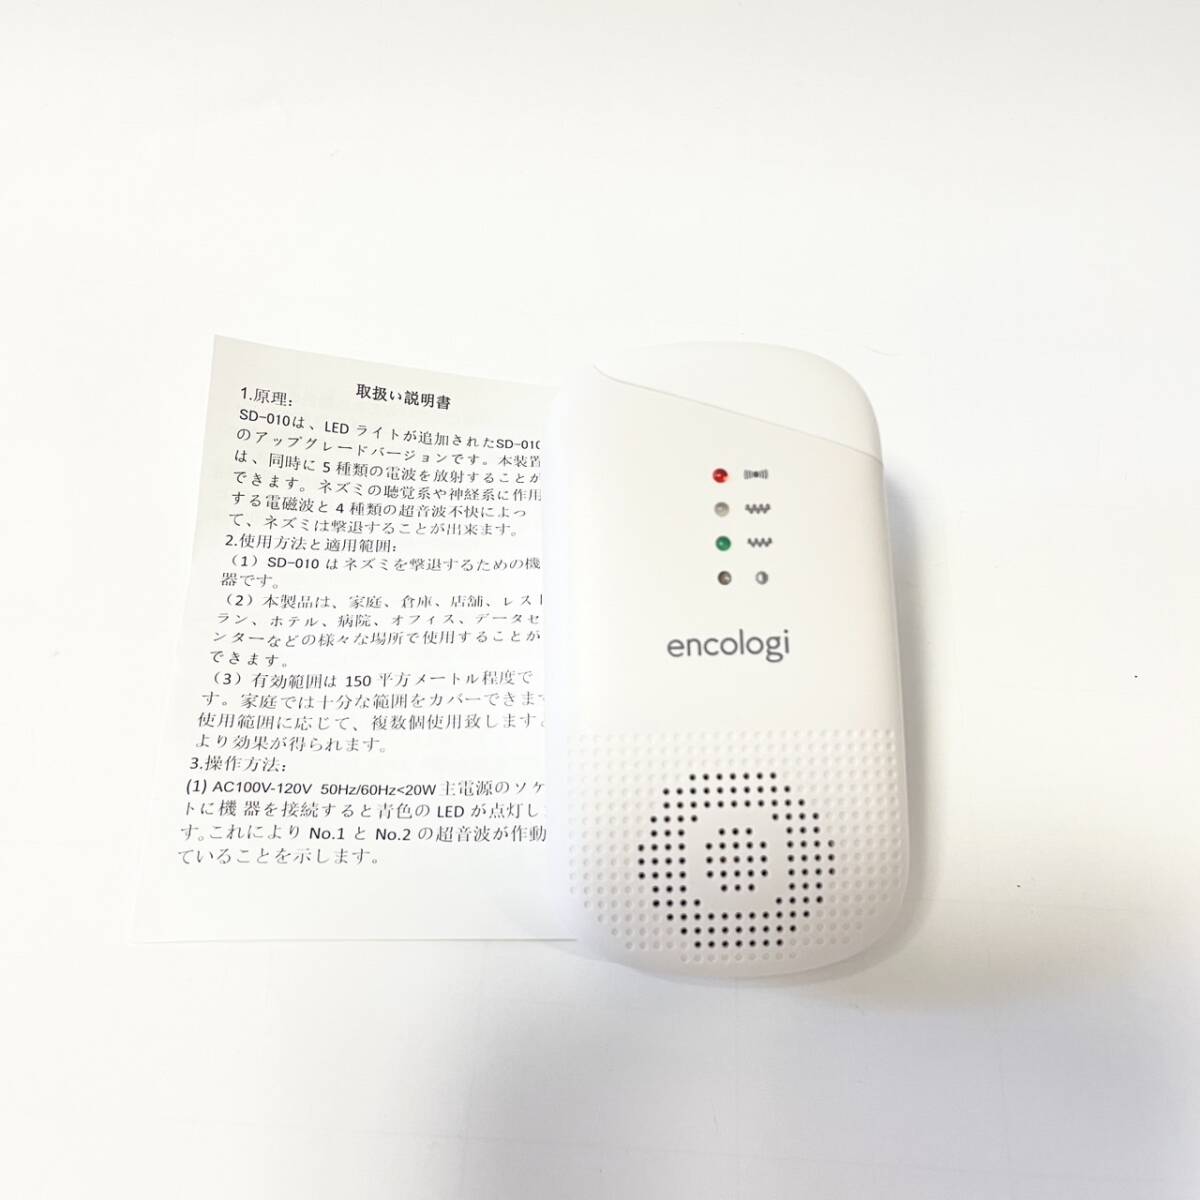  мышь удаление encologi[20-100Hz ультразвук &150. действительный область ] мышь ультразвук мышь удаление ультразвук мощный тихий звук мышь ультразвук сделано в Японии японский язык инструкция имеется 